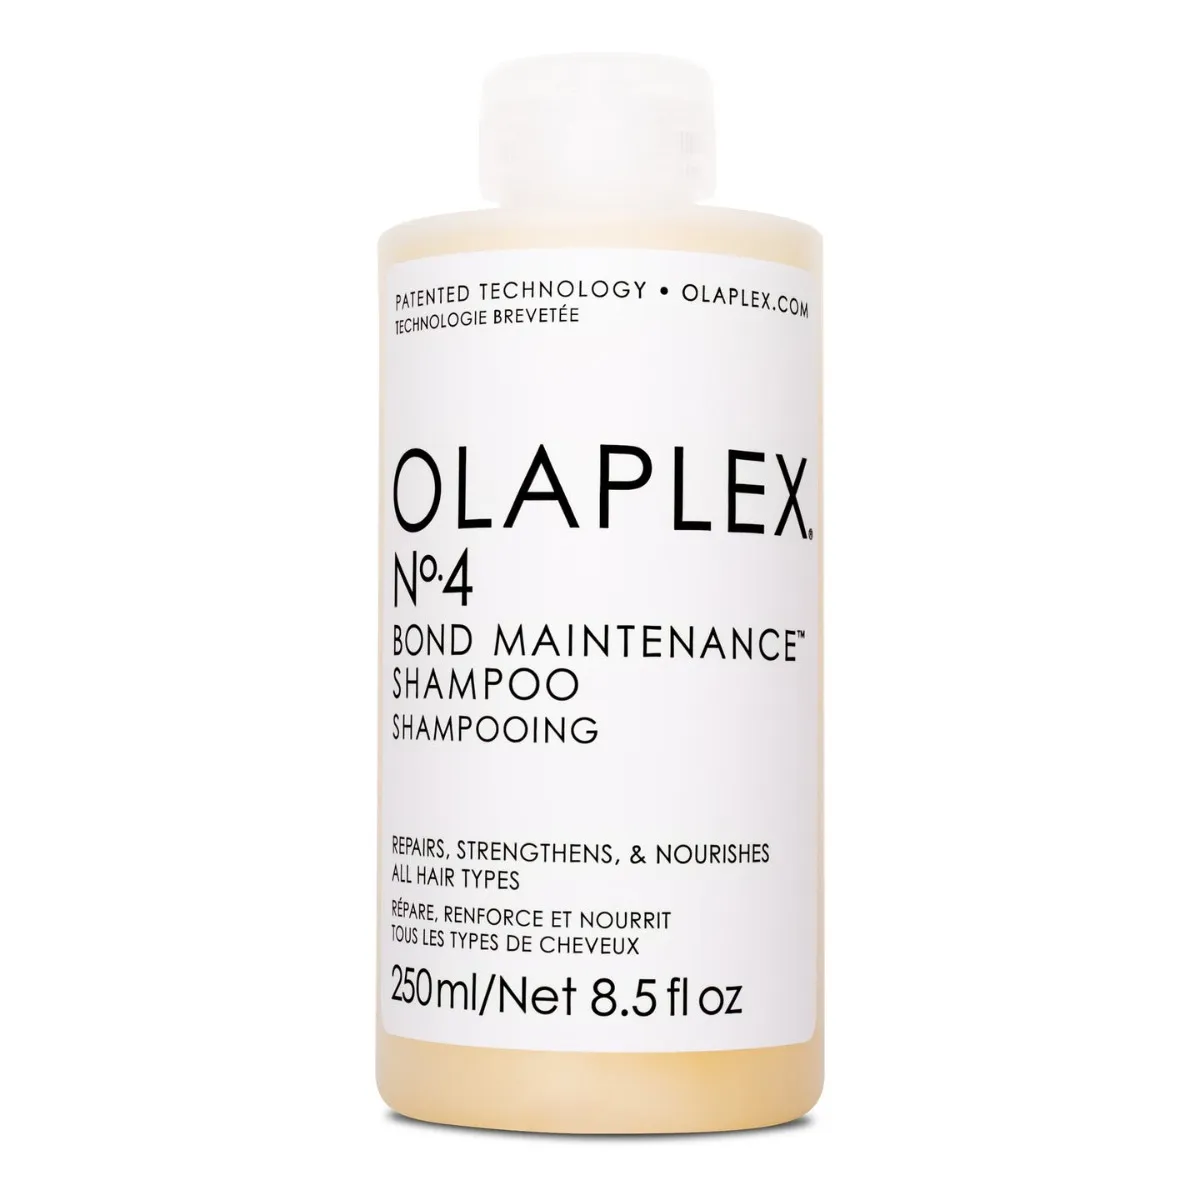 Olaplex N° 4 Bond Maintenance Shampoo